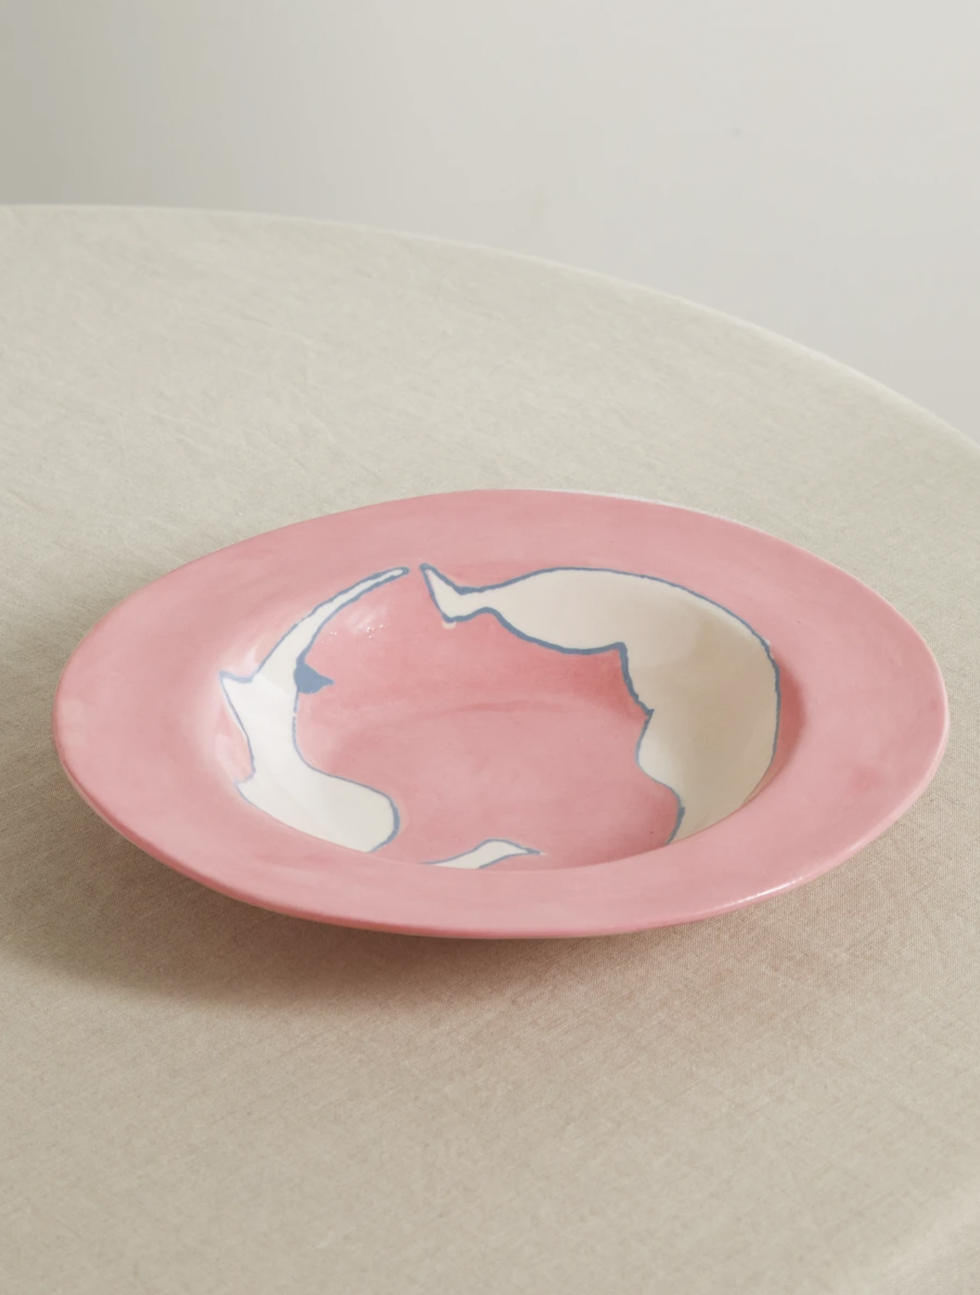 26cm Ceramic Dinner Plate